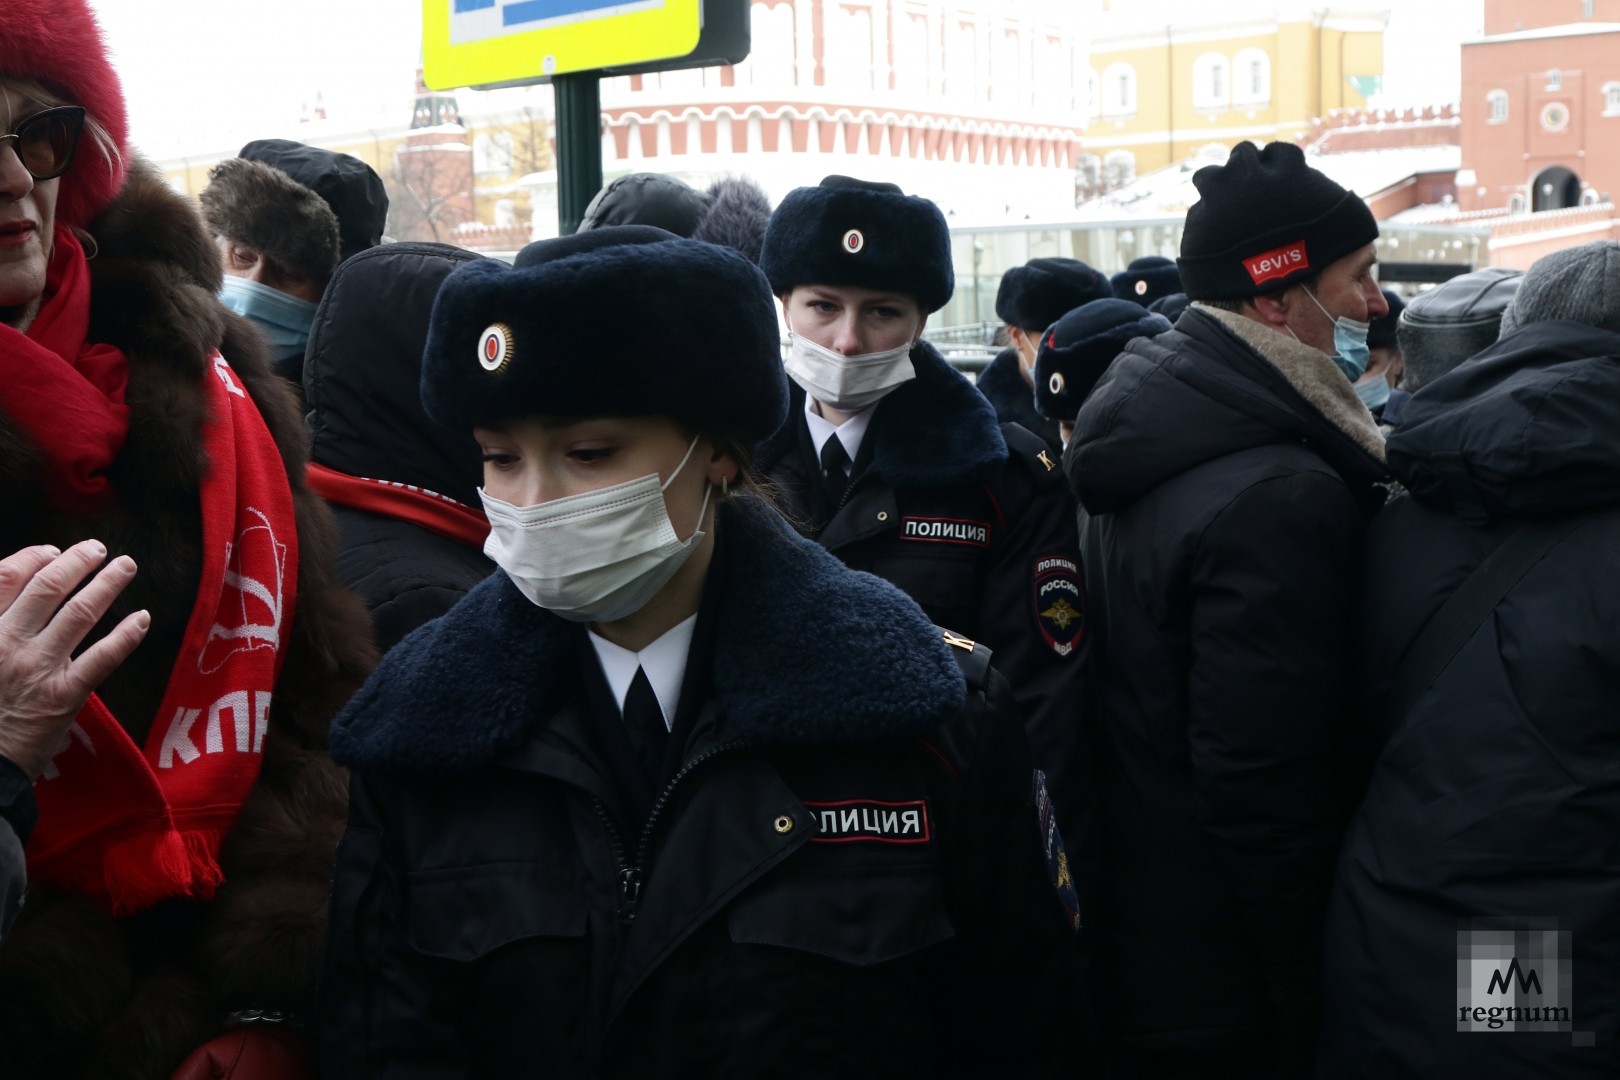 Где 23 февраля состоялся митинг народной воли. Полицейские на митинге в Москве. КПРФ митинг 23 февраля. Девушки полицейские на митинге.